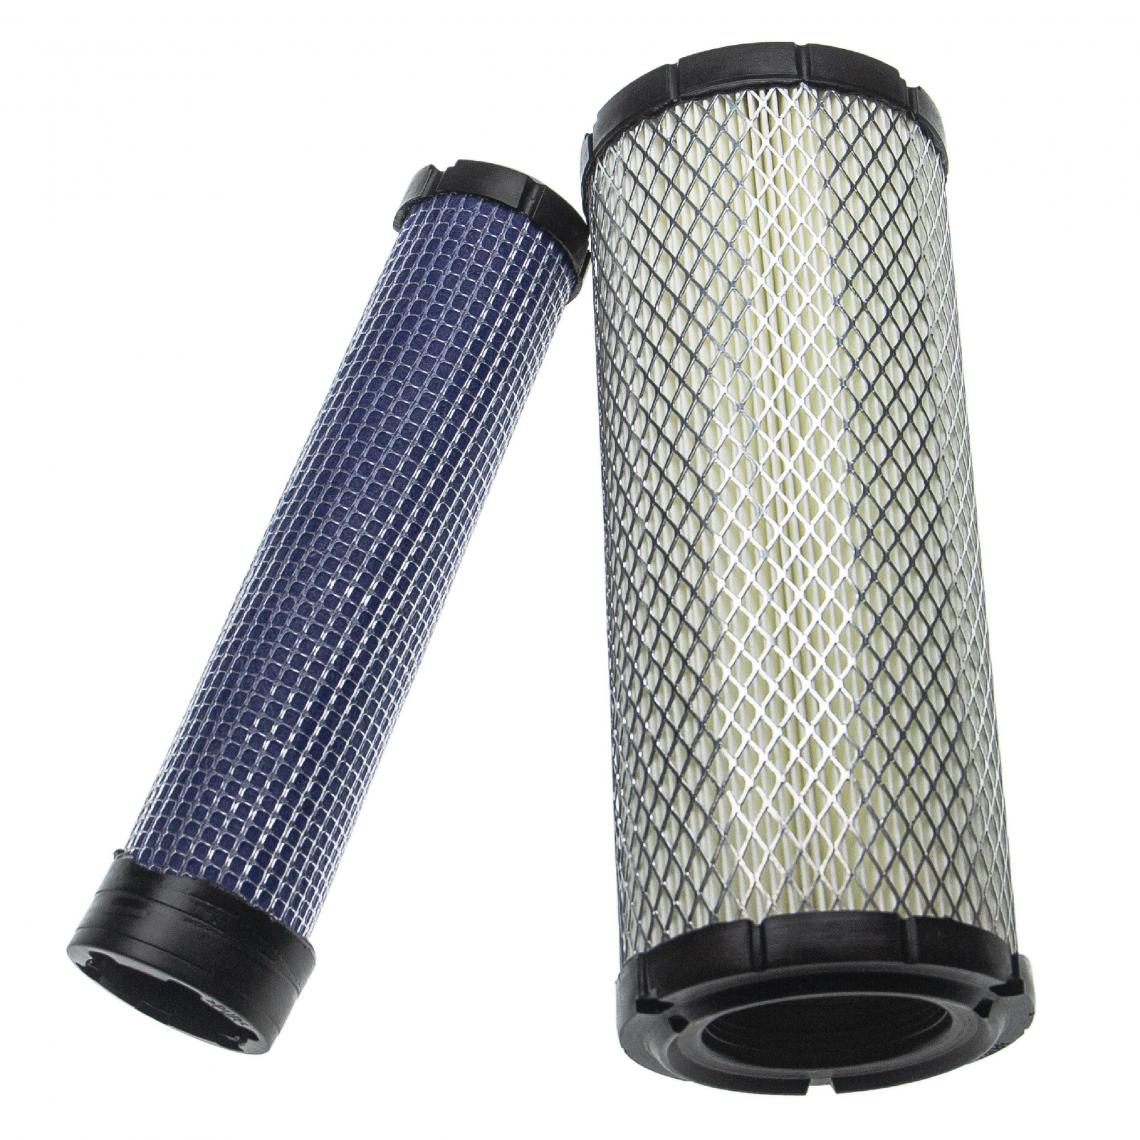 Vhbw - vhbw Lot de filtres compatible avec Kubota L4600F, L4600H, L4610DTGST, L4610DTHST engin de chantier; 1x filtre interne, 1x filtre extérieur - Autre appareil de mesure